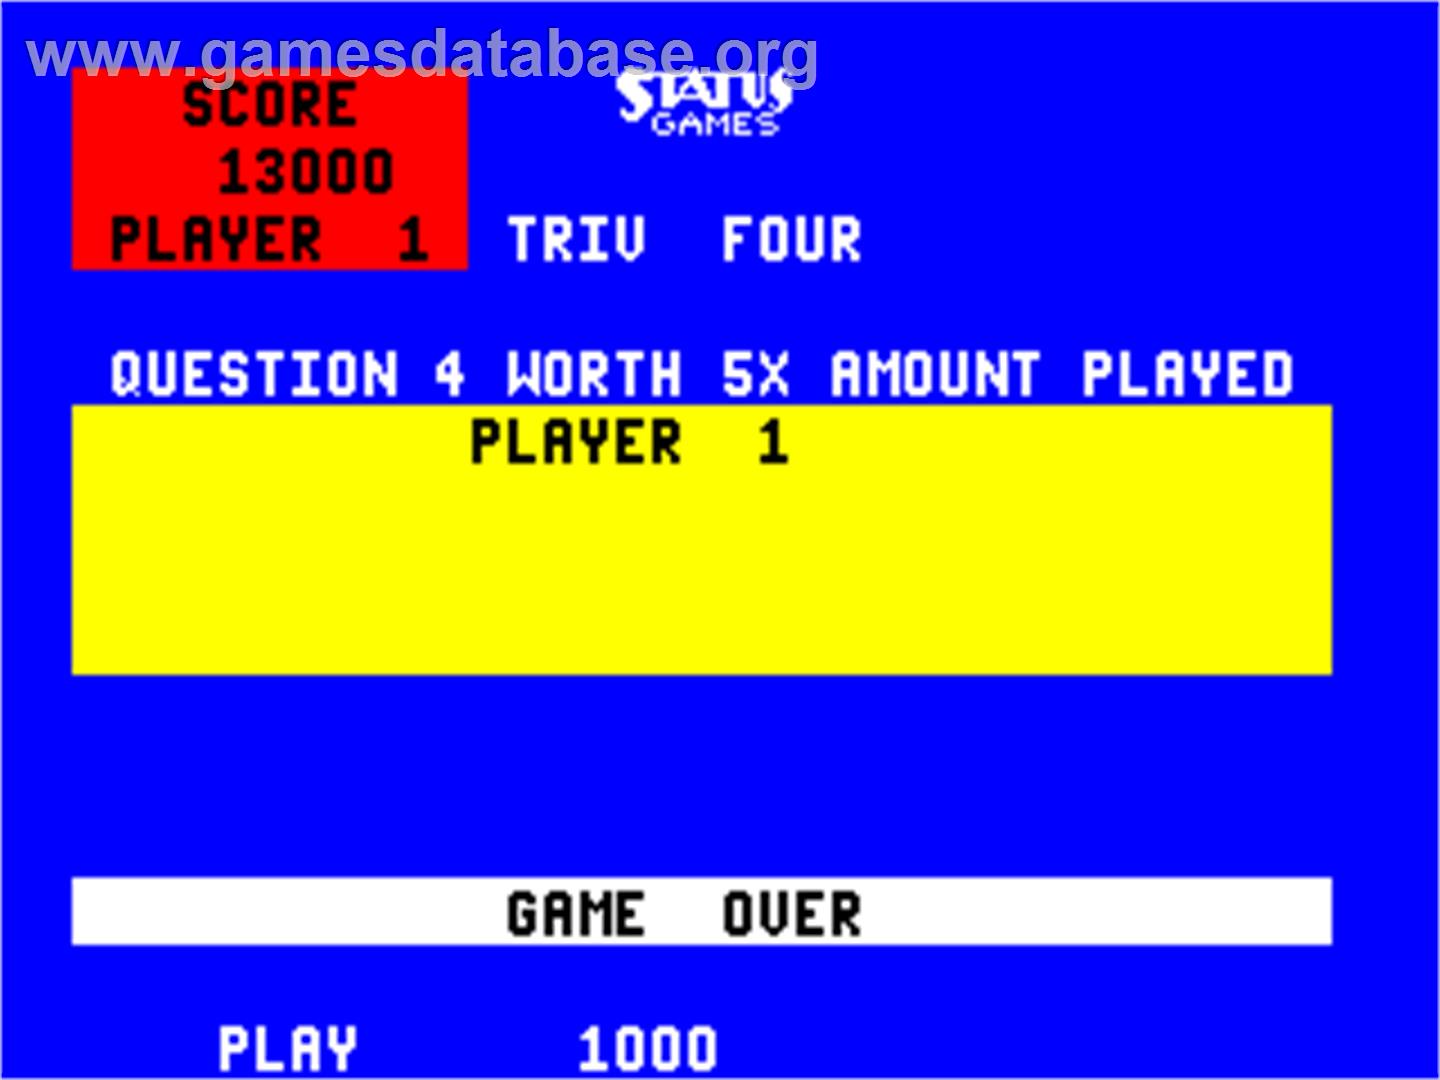 Triv Four - Arcade - Artwork - Game Over Screen